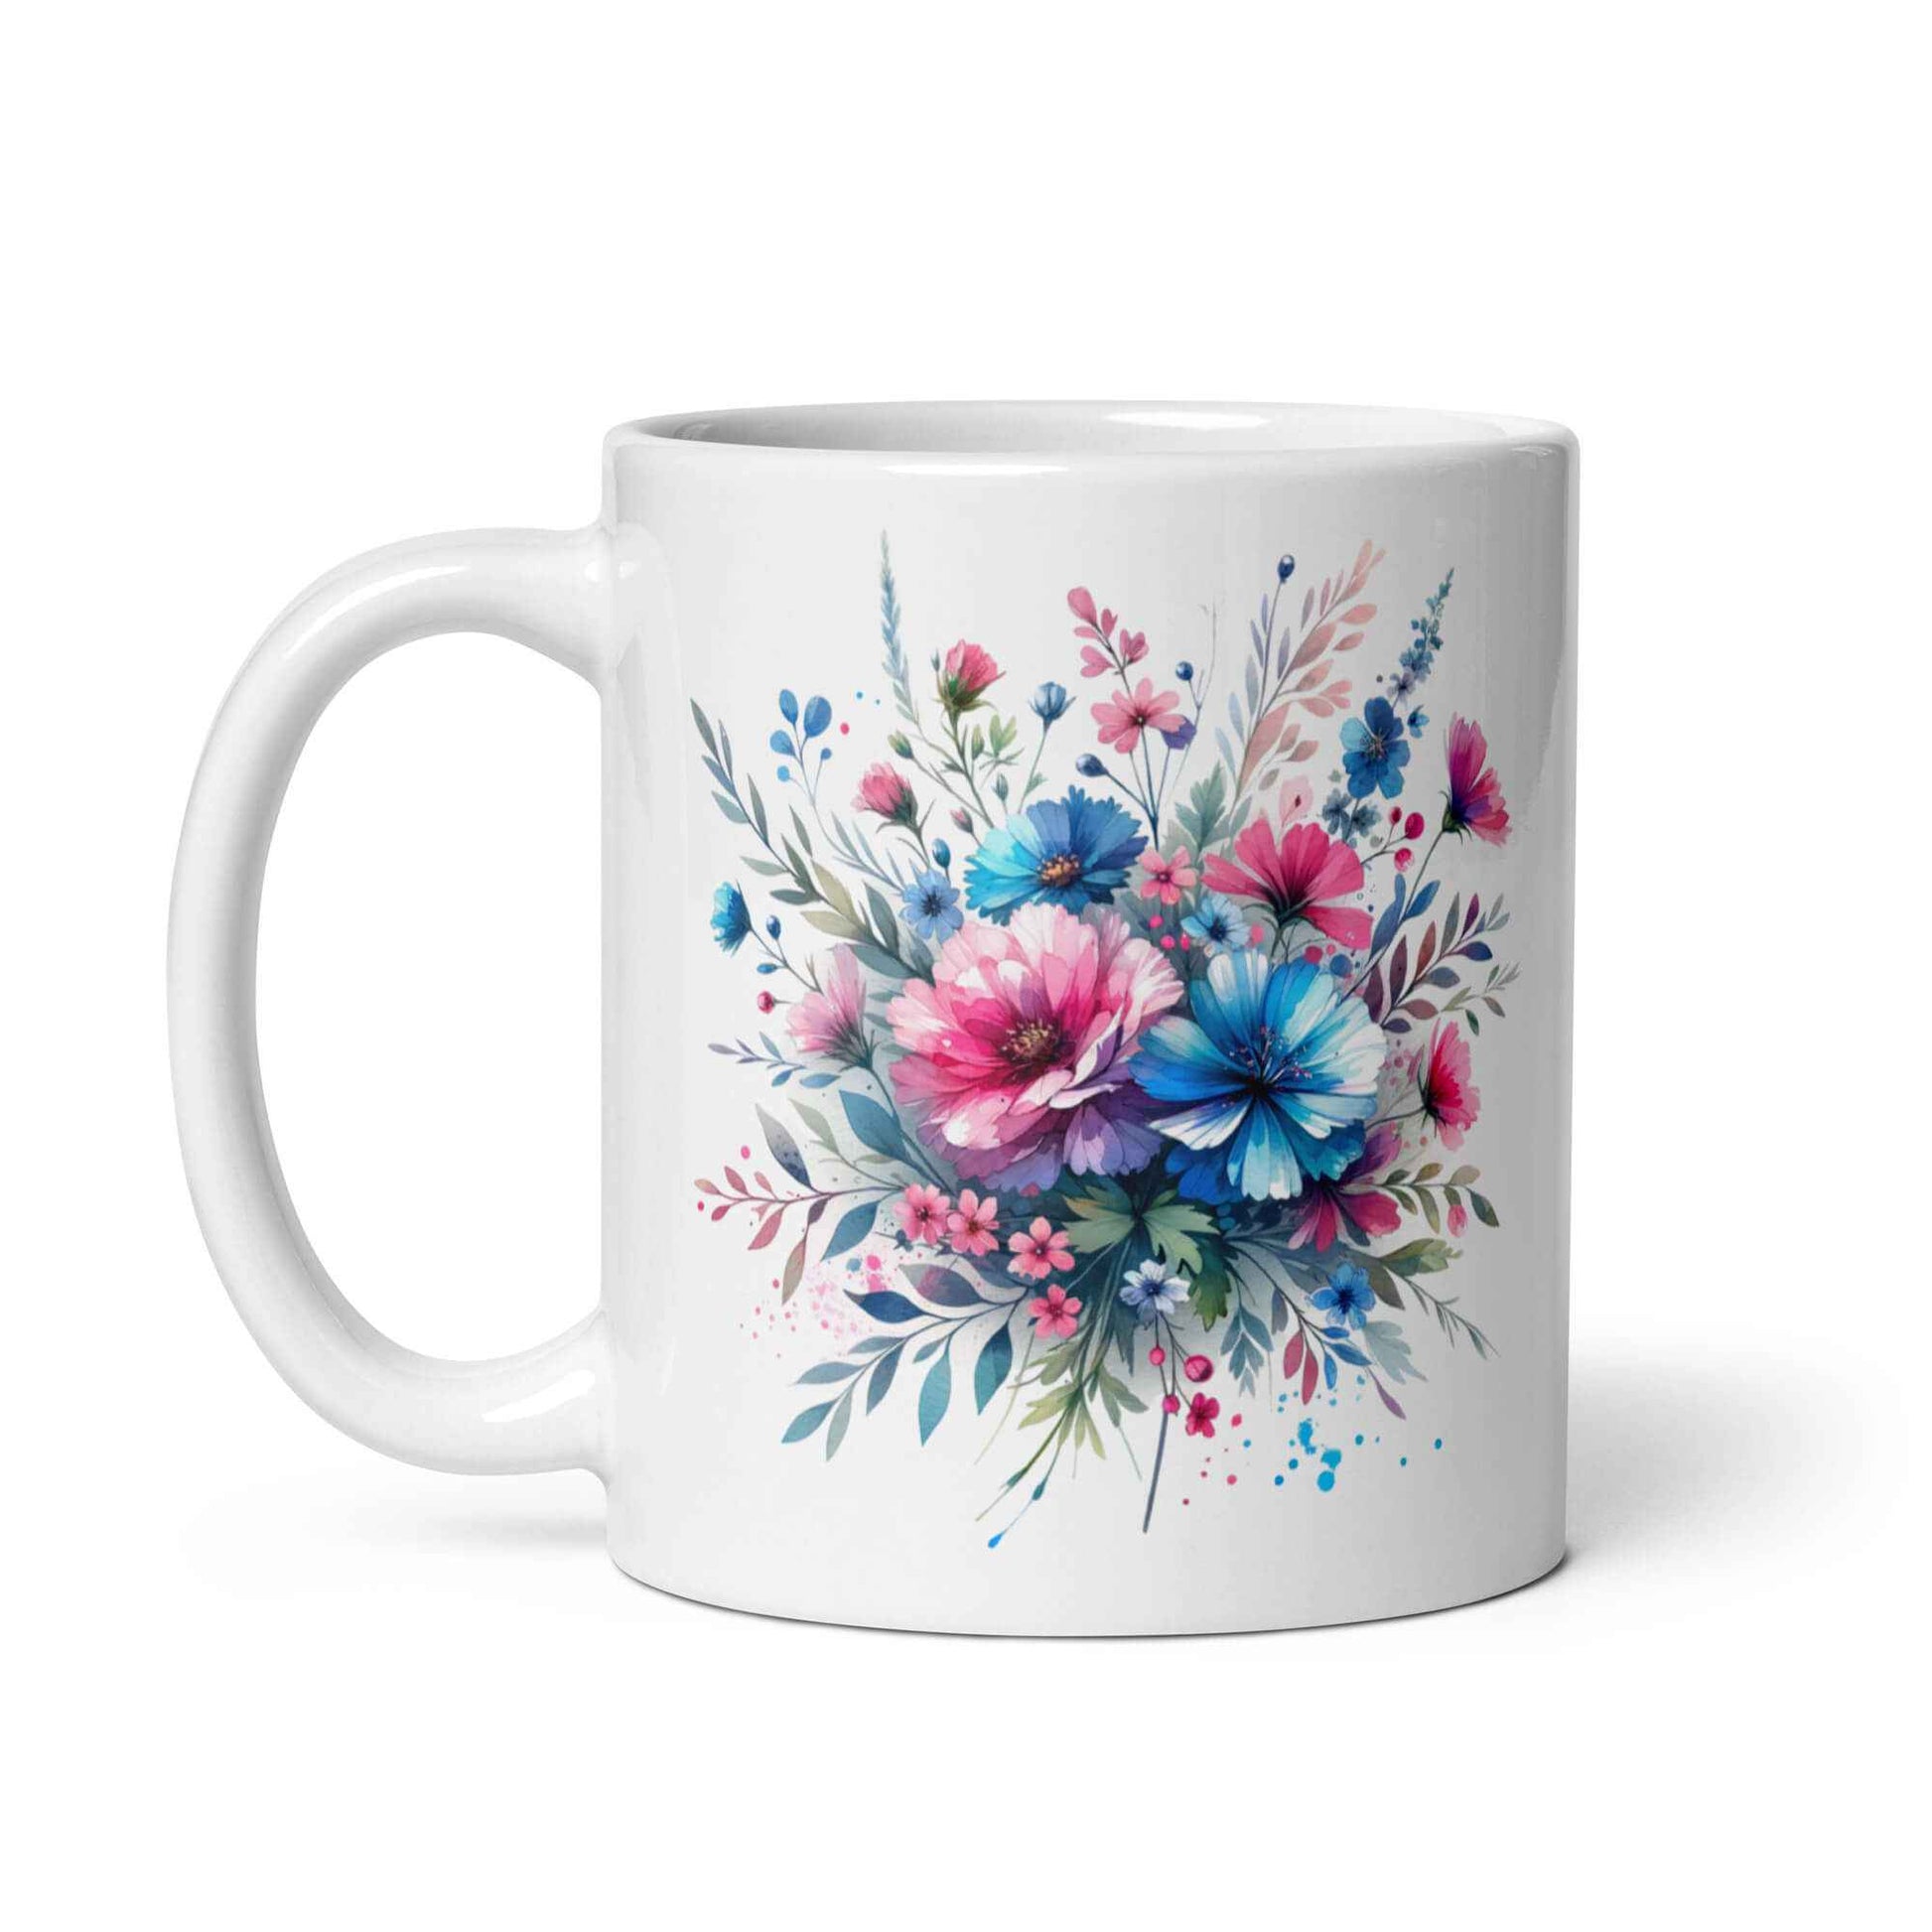 Exquisite Ceramic Mug Adorned with Vibrant Wildflowers - 